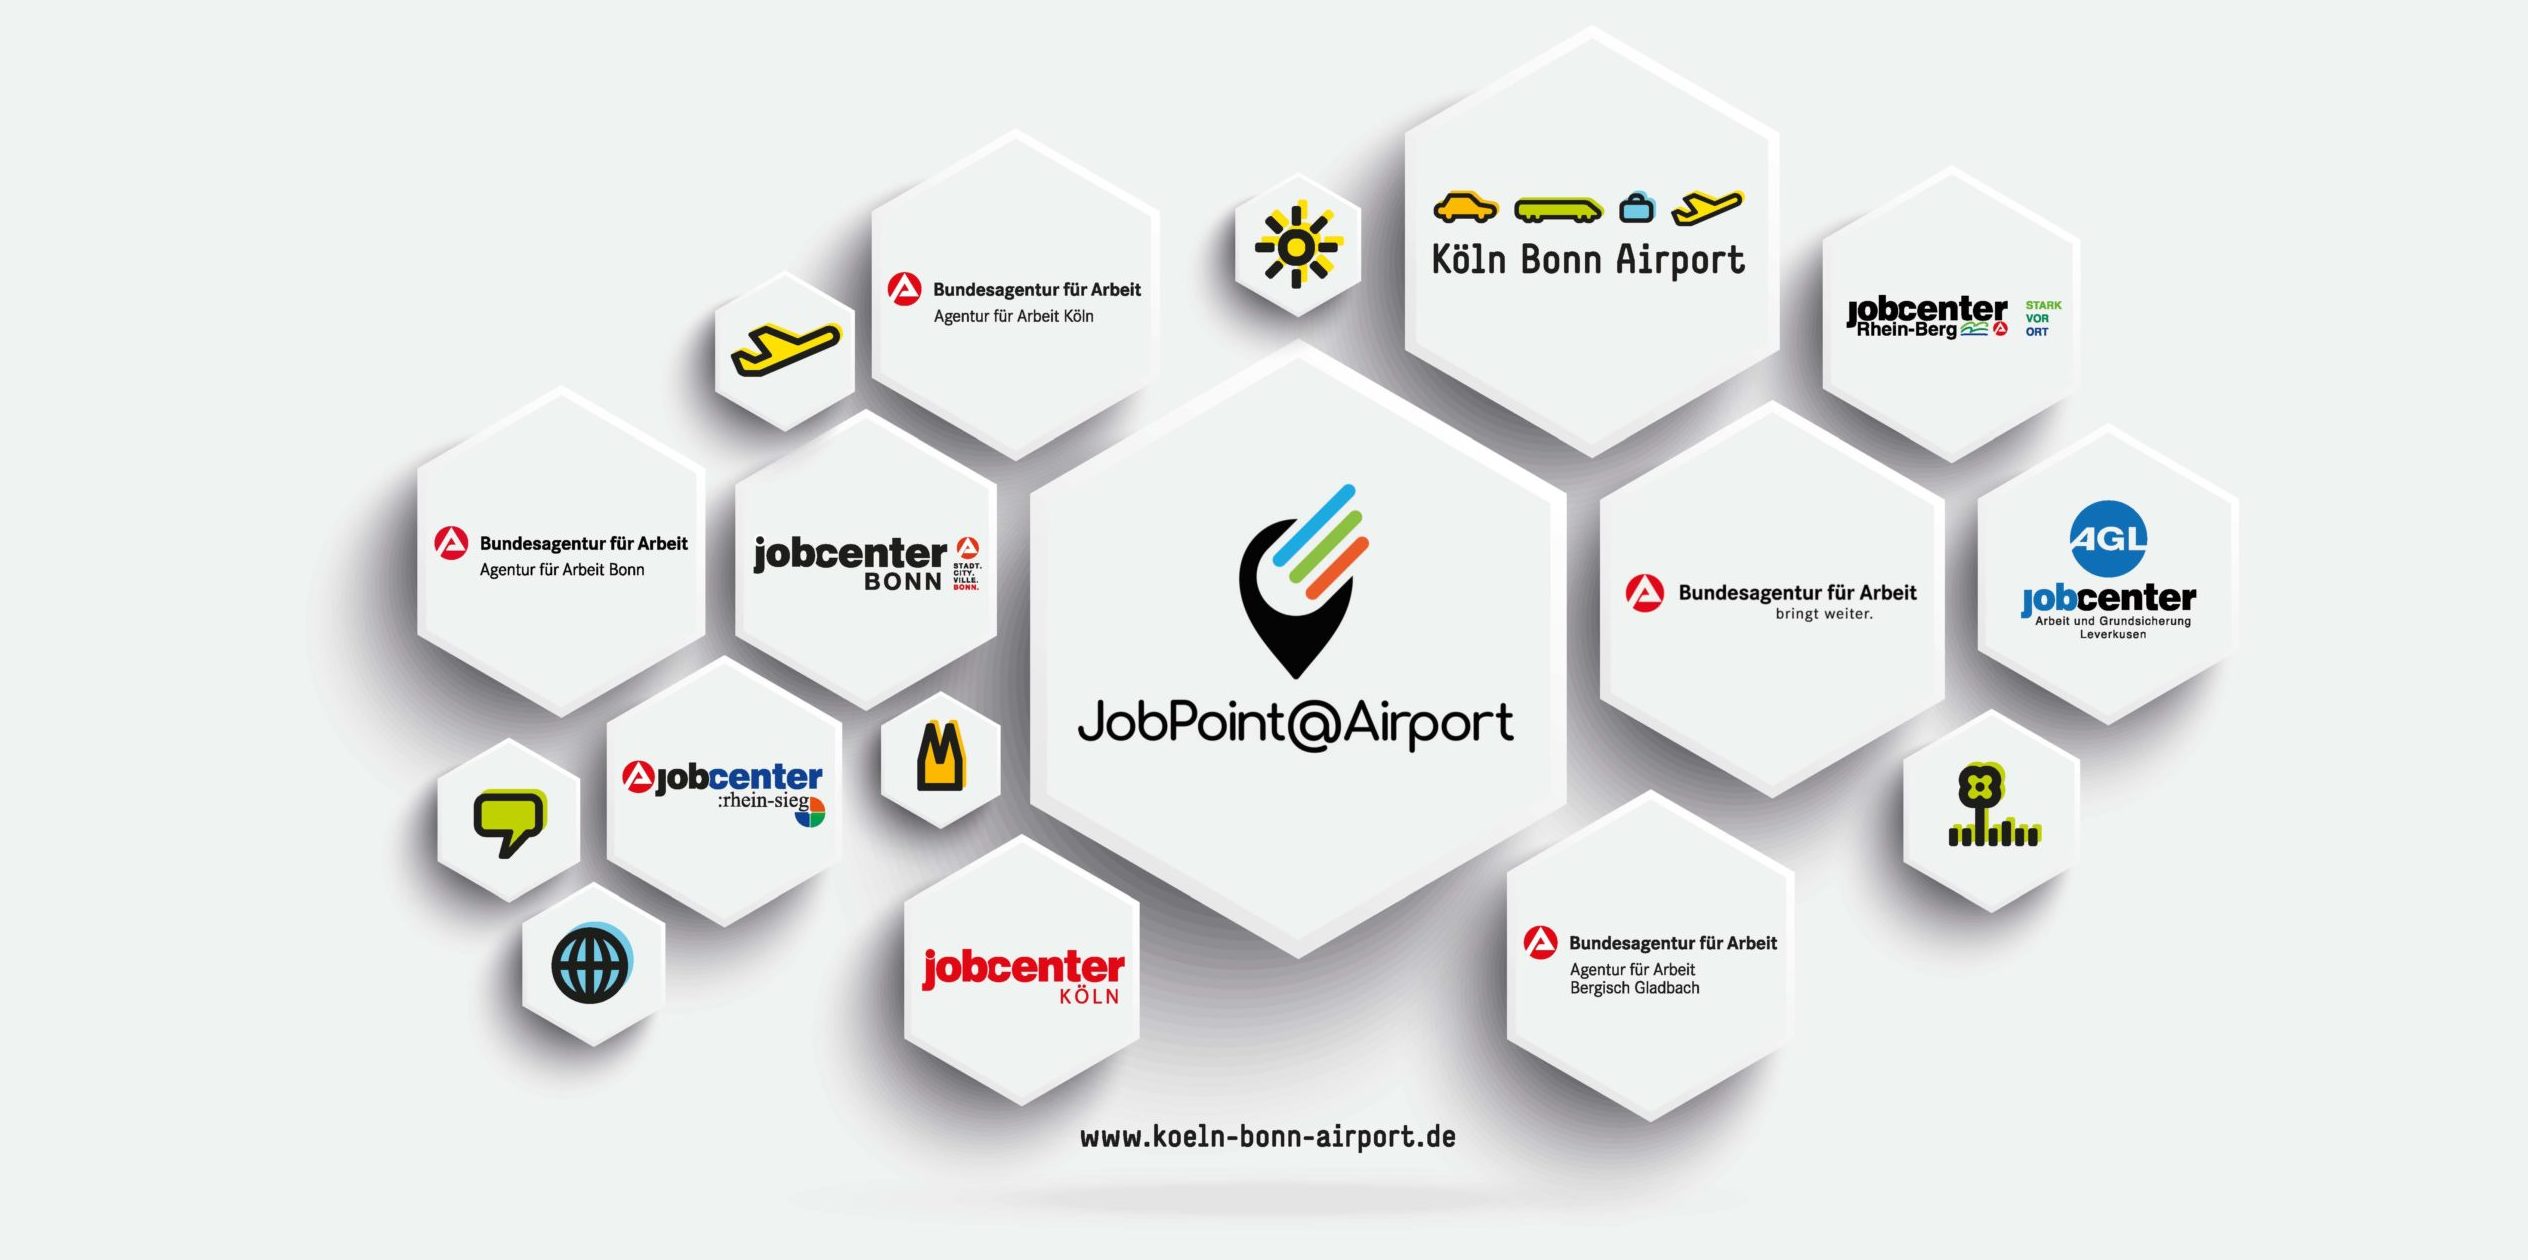 Die Grafik enthält alle Logos der beteiligten Agenturen für Arbeit und Jobcenter